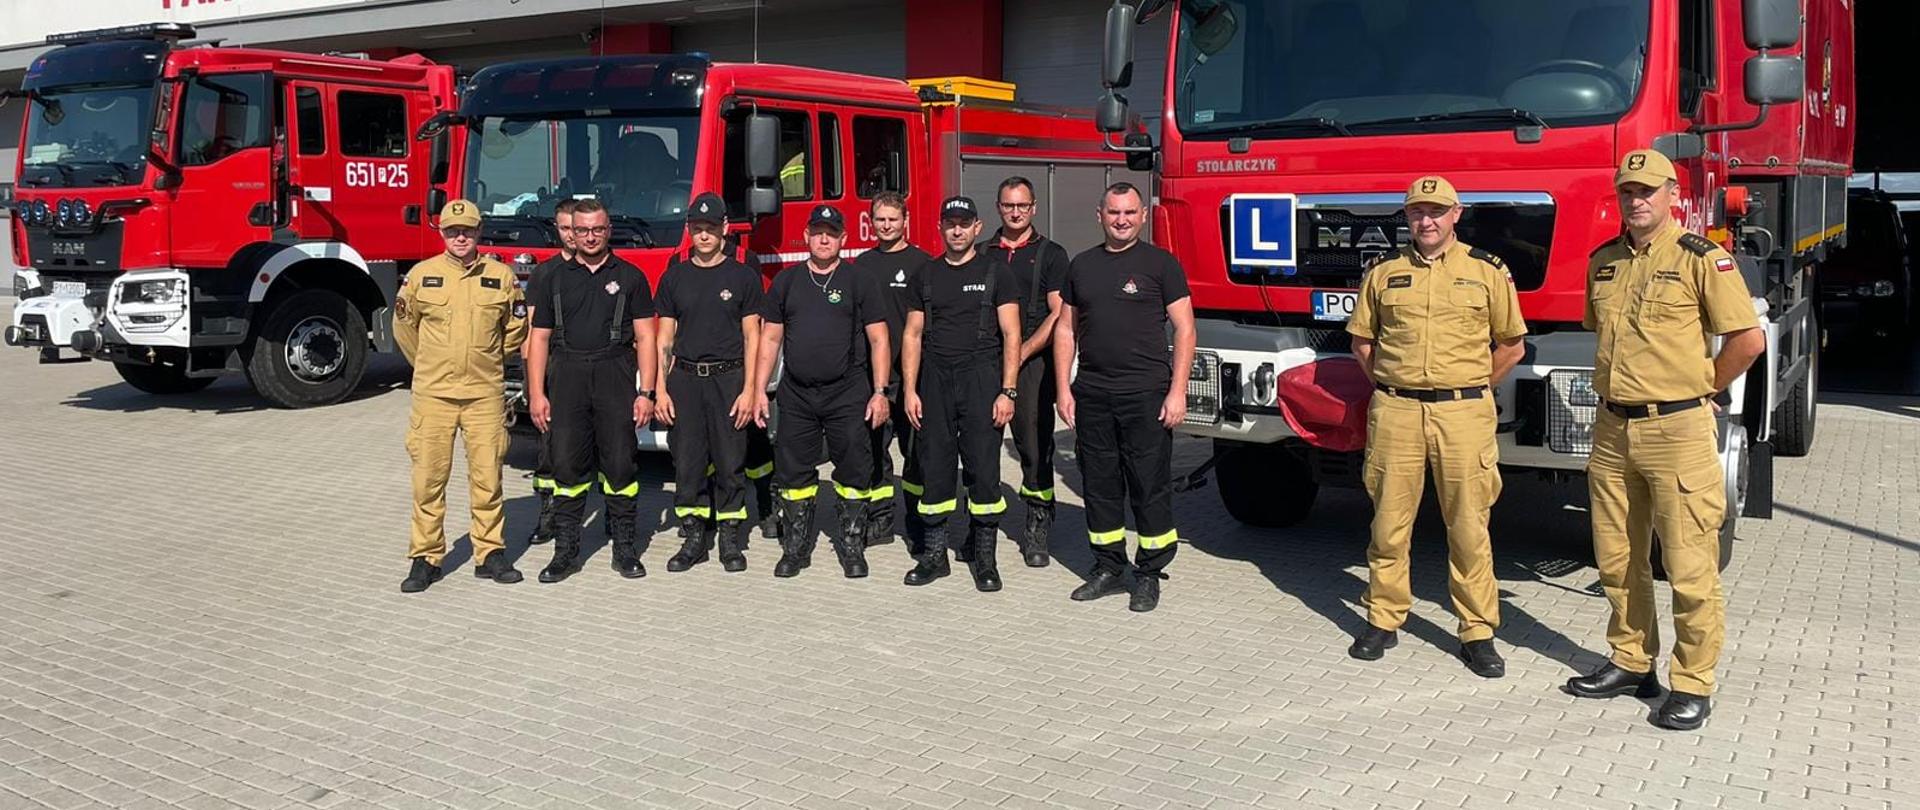 Zdjęcie przedstawia jedenastu strażaków stojących przed trzema wozami strażackimi. z tyłu napis Państwowa Straż Pożarna